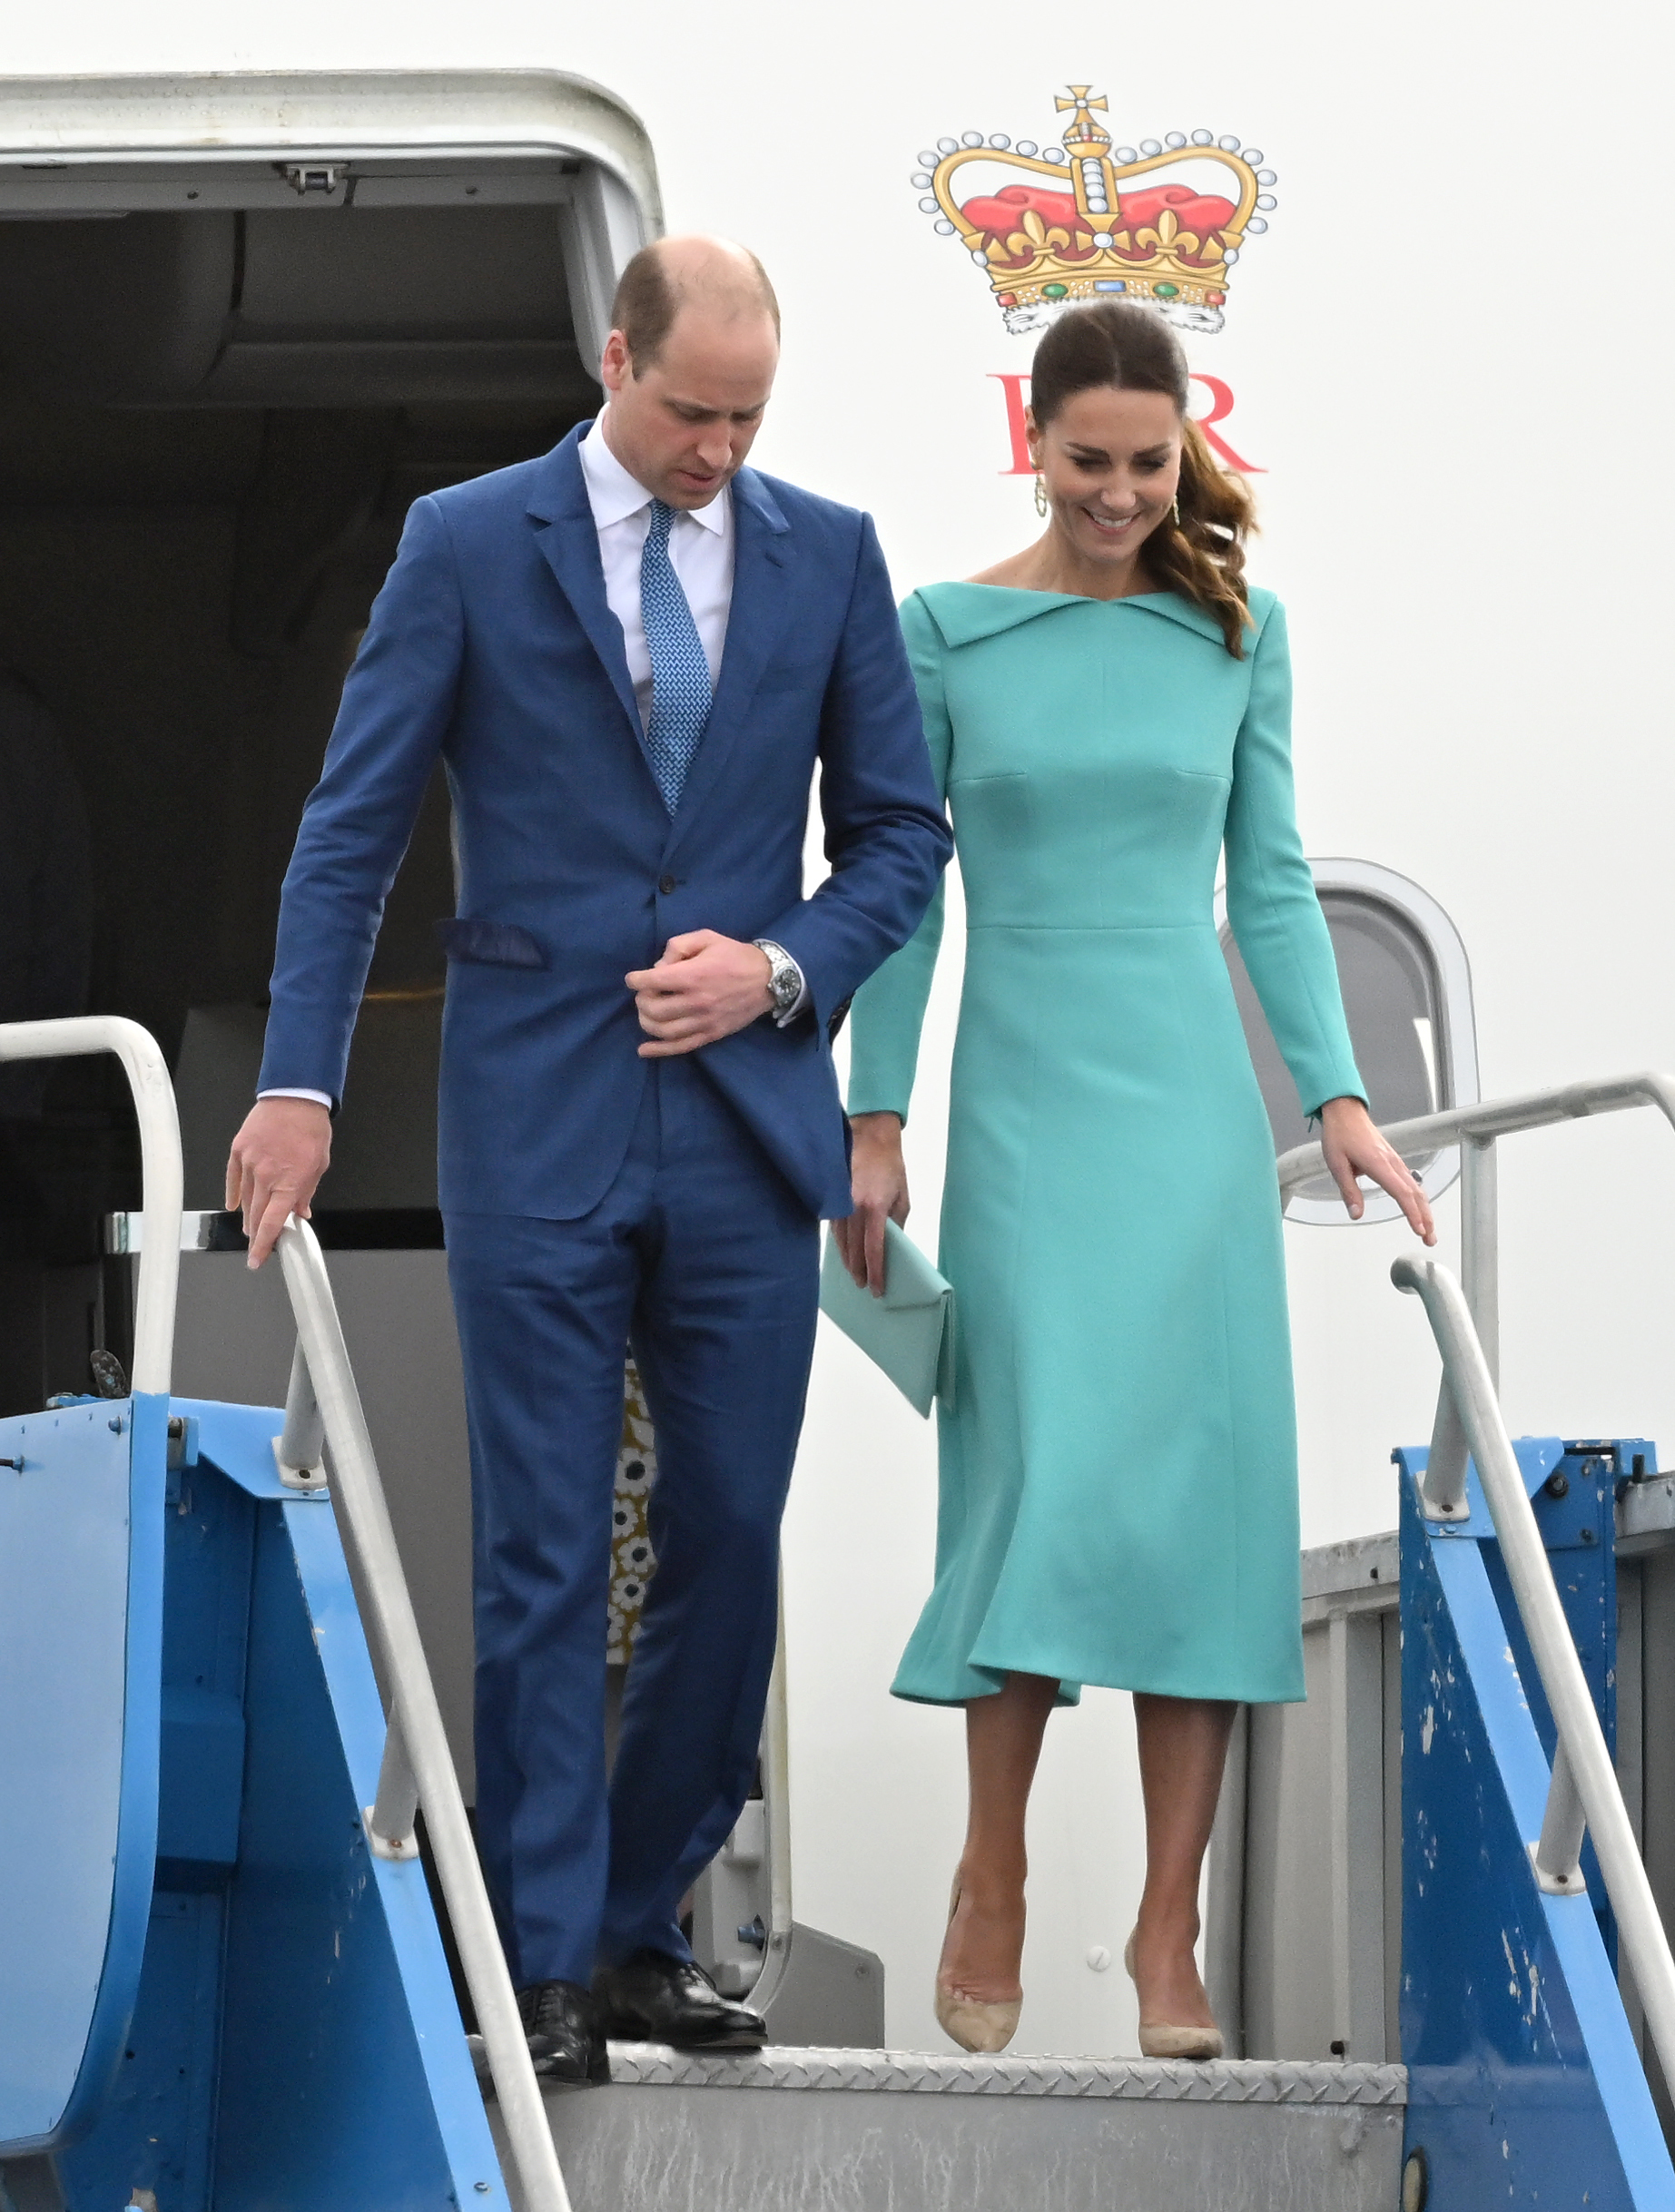 Kate Middleton llegando a las Bahamas con vestido de Emilia Wickstead.